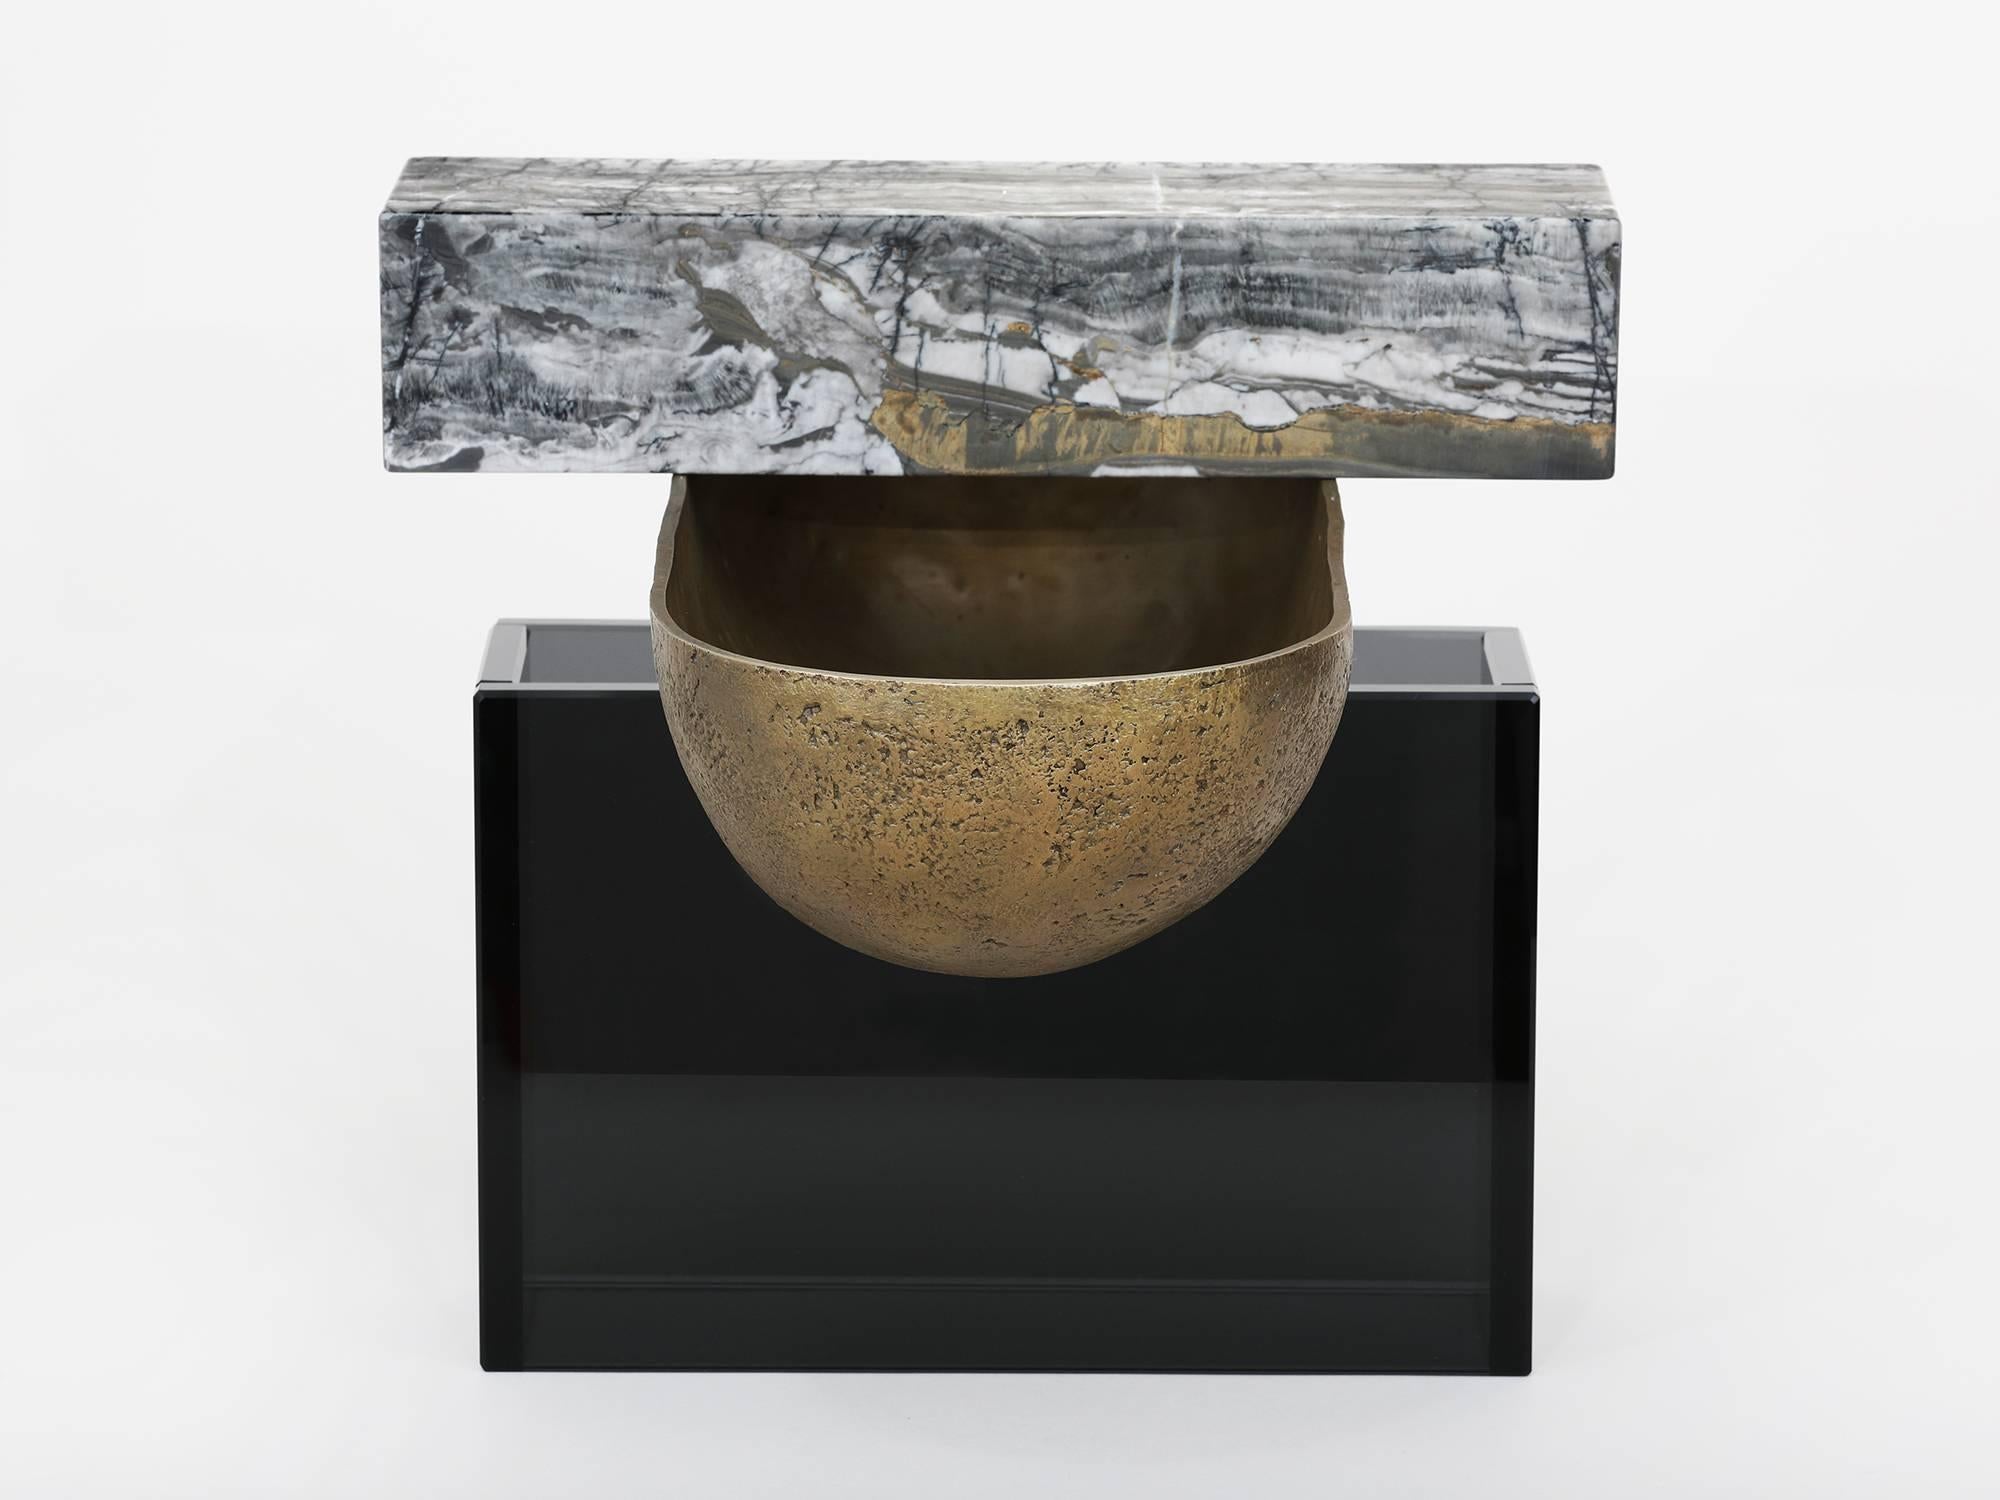 L'un des trois vaisseaux développés comme maquettes de matériaux pour les œuvres plus grandes de Brian Thoreen. Composé d'un bol en bronze moulé, de marbre gris et de verre gris. Disponible également en marbre brun ou rouge et en verre bronze.